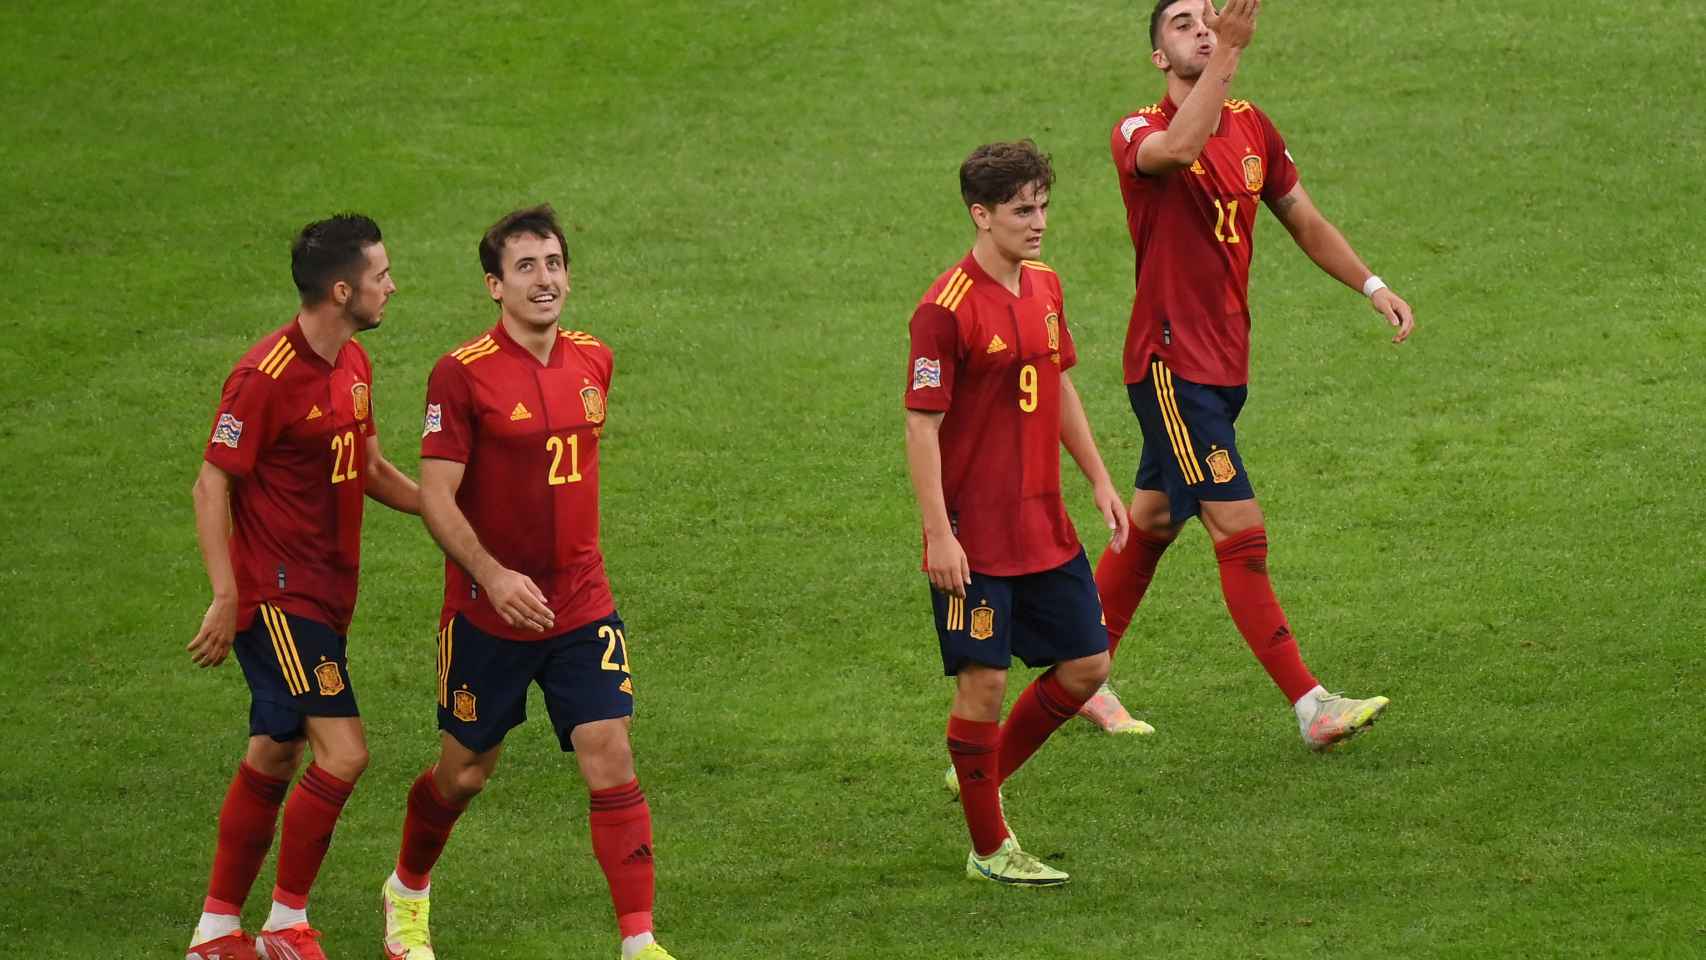 Los jugadores de la selección española vuelven al centro del campo tras el gol a Italia